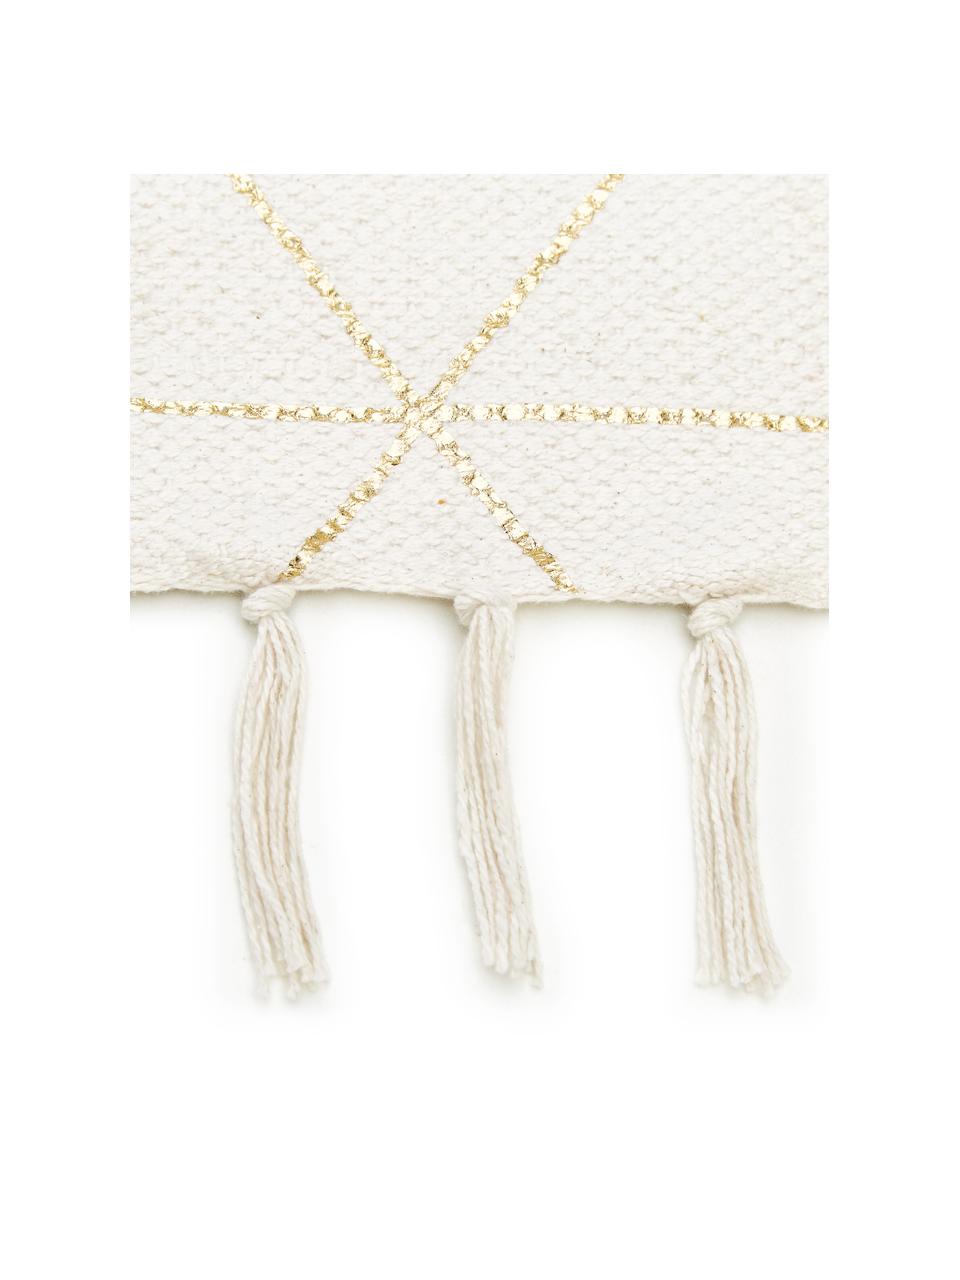 Tkany na płasko dywan z bawełny z frędzlami Yena, Beżowy, złoty, S 70 x D 140 cm (Rozmiar XS)